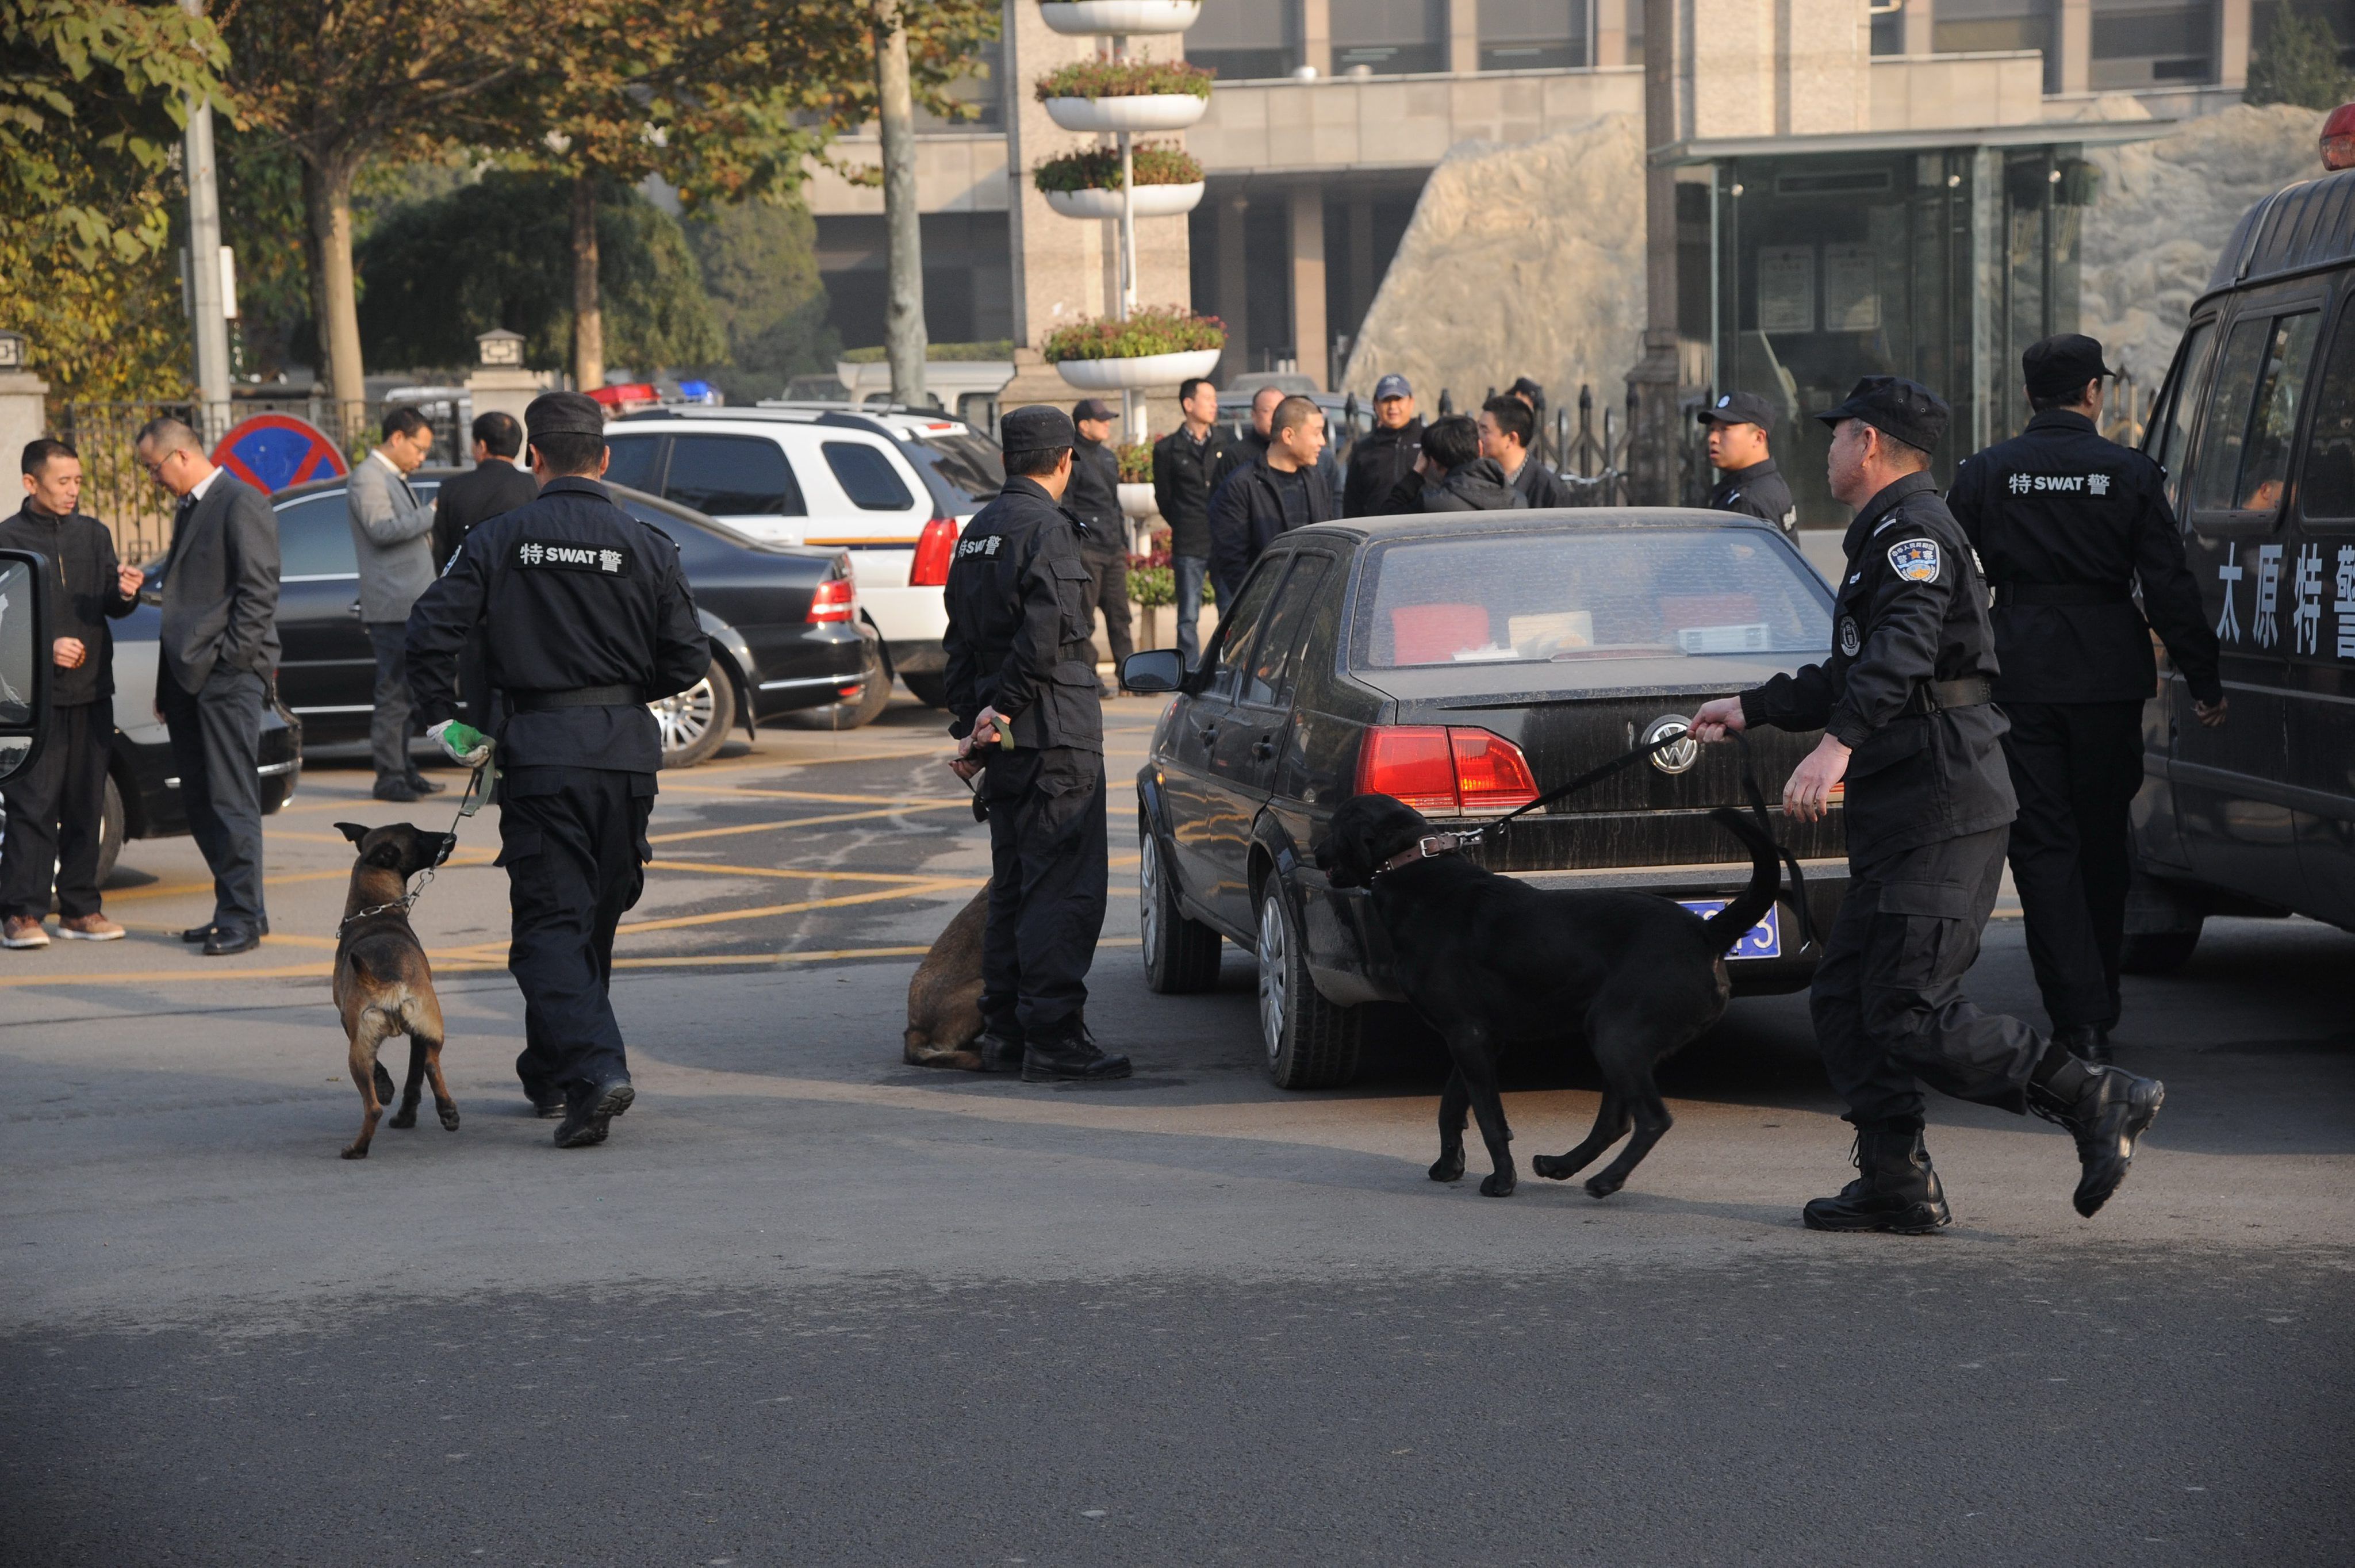 Районът беше отцепен от множество полицаи с обучени кучета